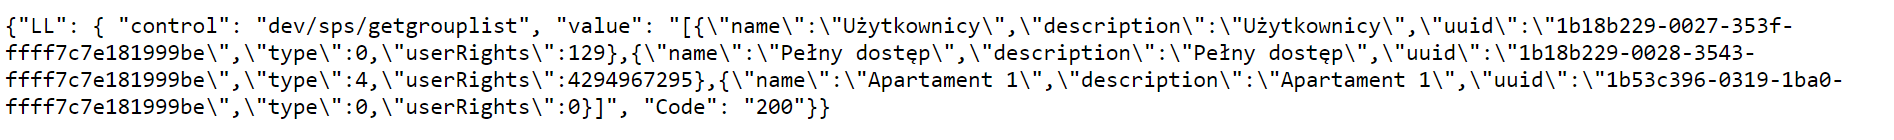 zwrotka API wraz z kodami UUID. Integracja Loxone z Hotres.